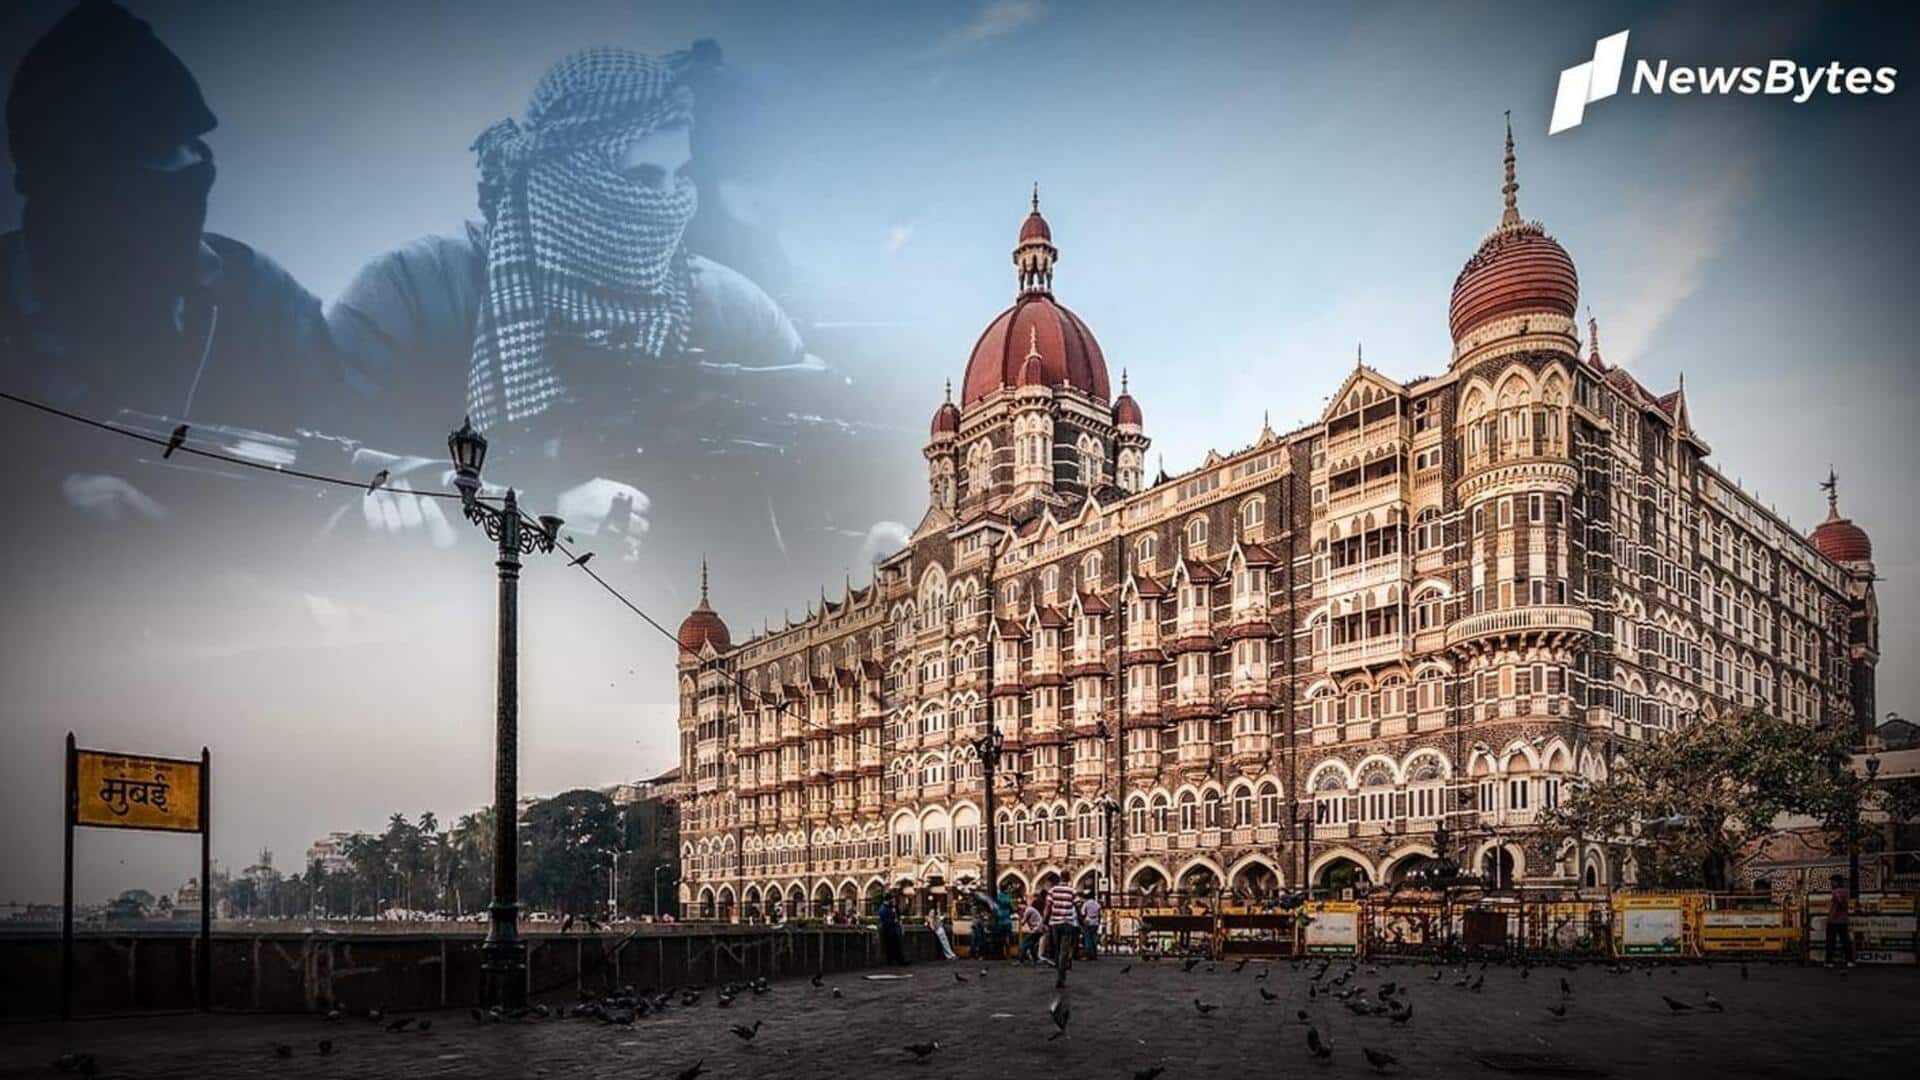 "ताज होटल को बम से उड़ाने 2 पाकिस्तानी आएंगे", मुंबई पुलिस को आया धमकी भरा कॉल